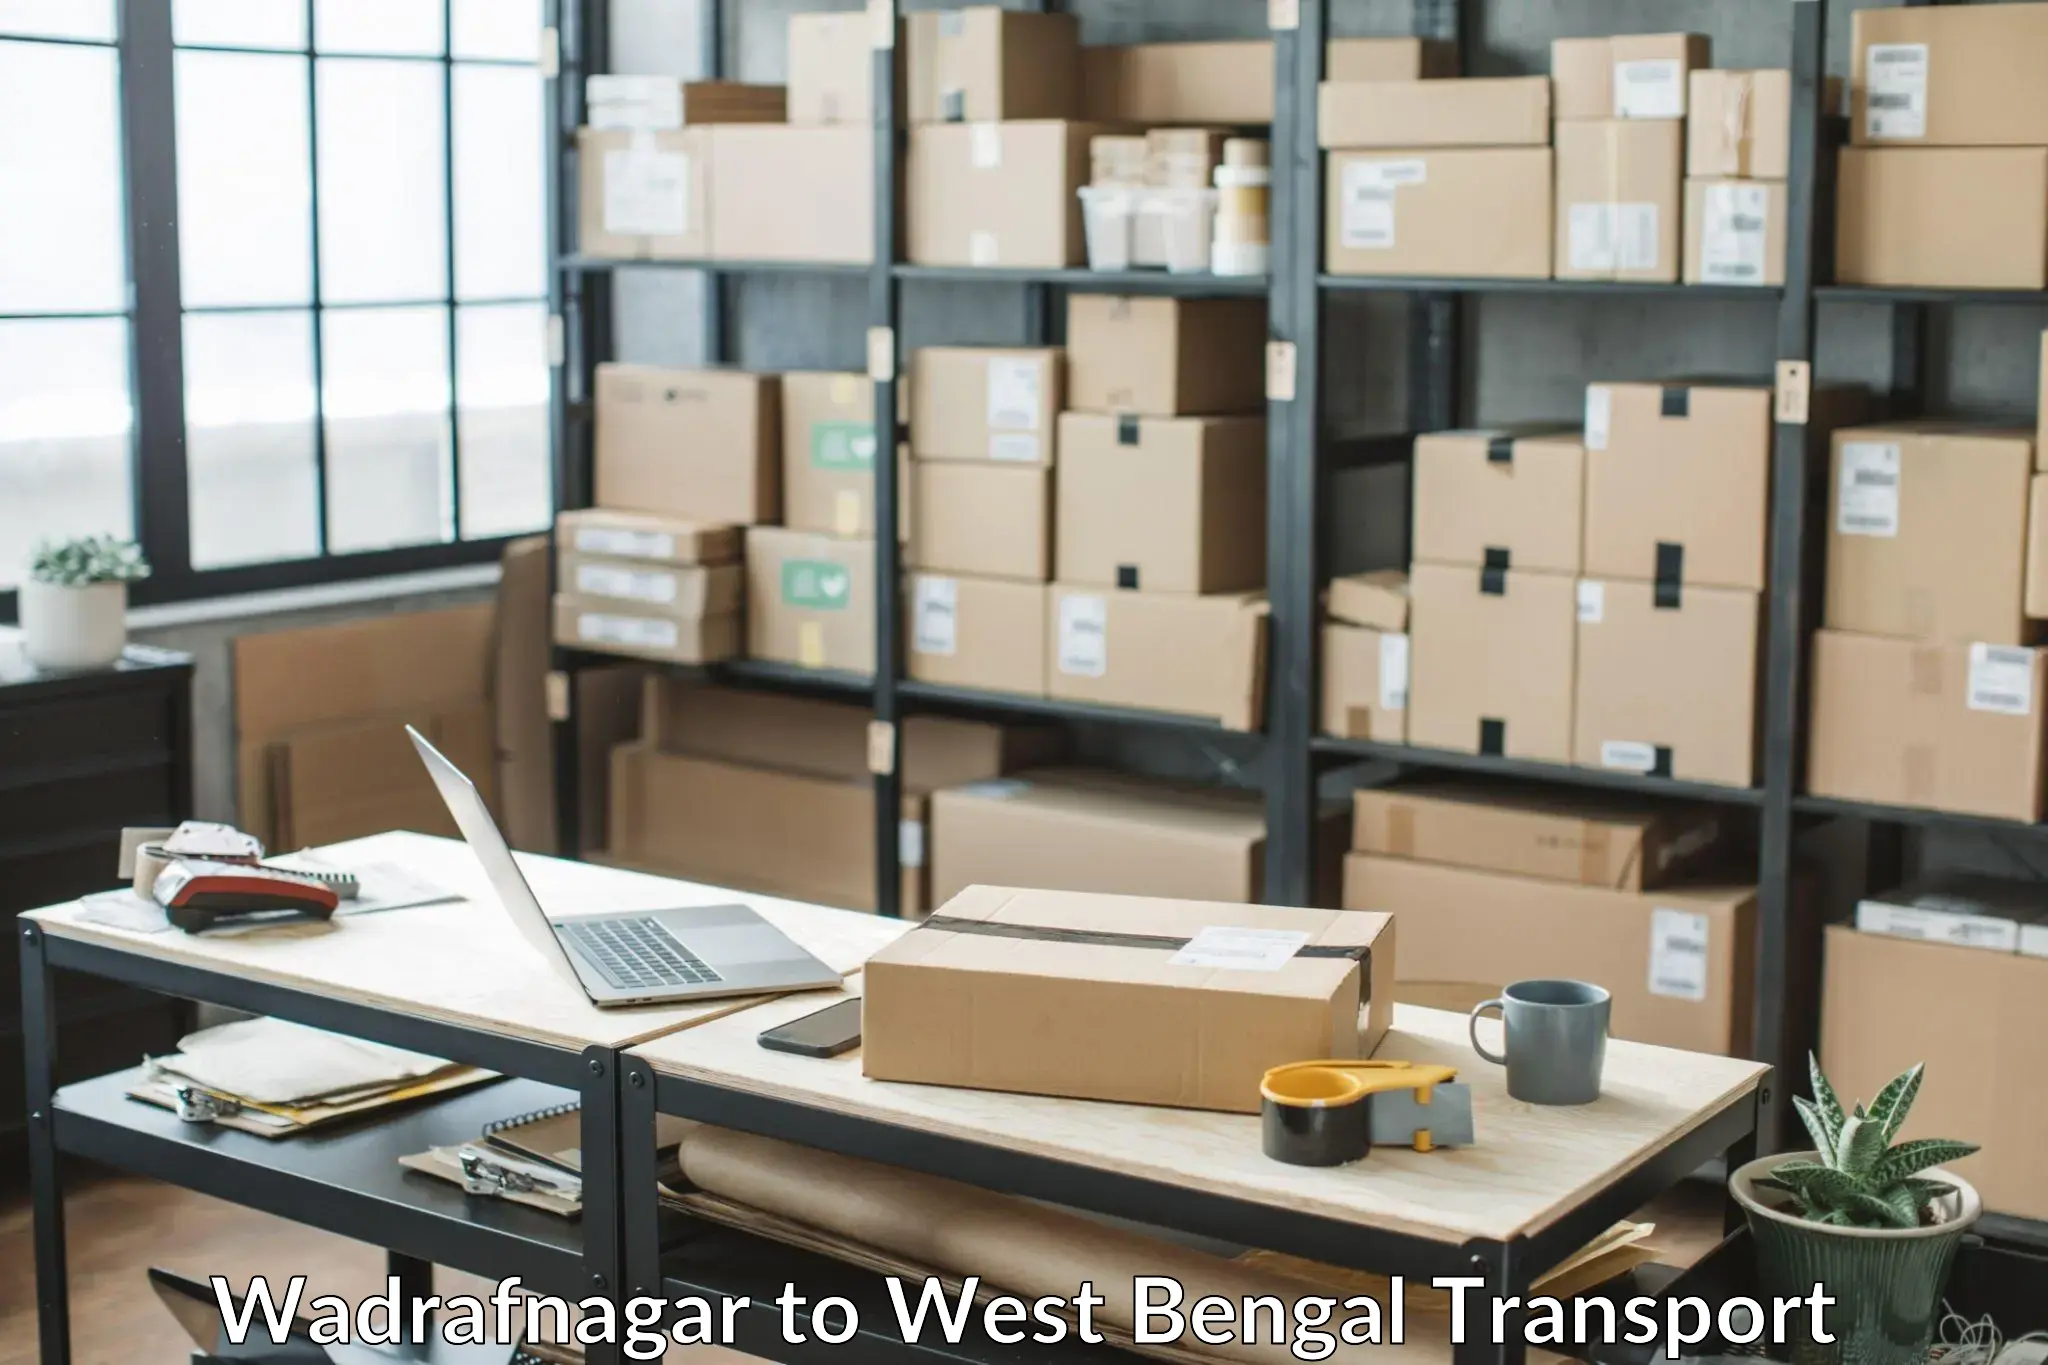 Air cargo transport services Wadrafnagar to Durgapur